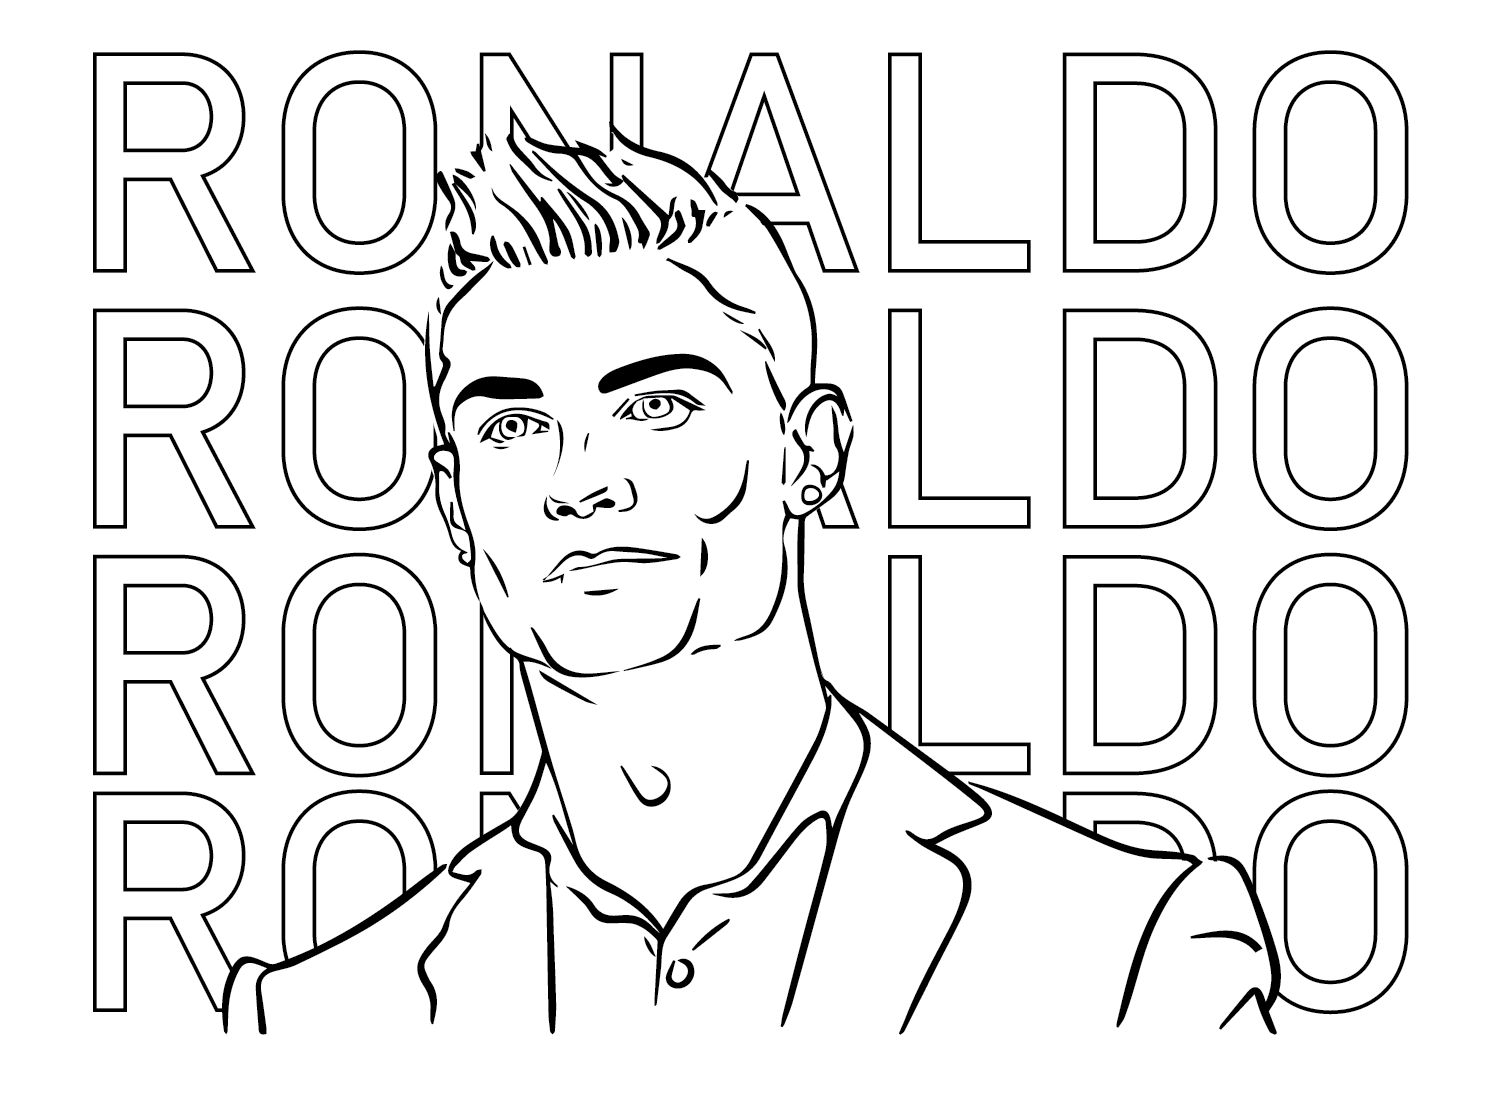 Cristiano Ronaldo Lineart da Cristiano Ronaldo